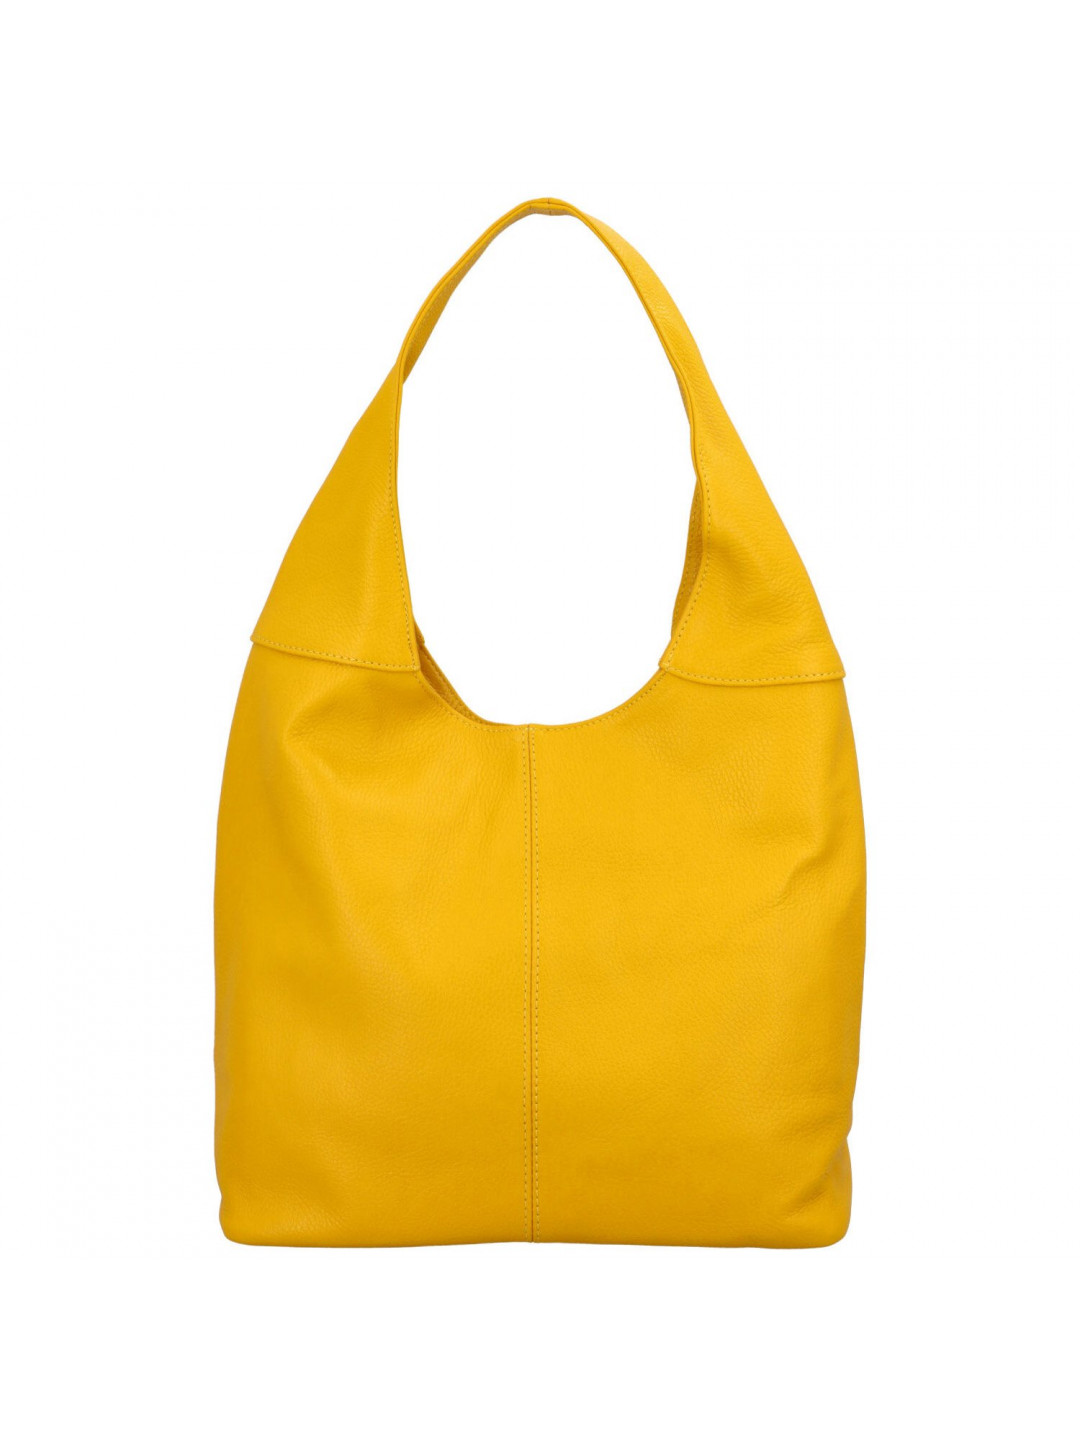 Velká dámská kožená kabelka Hayley výrazná žlutá